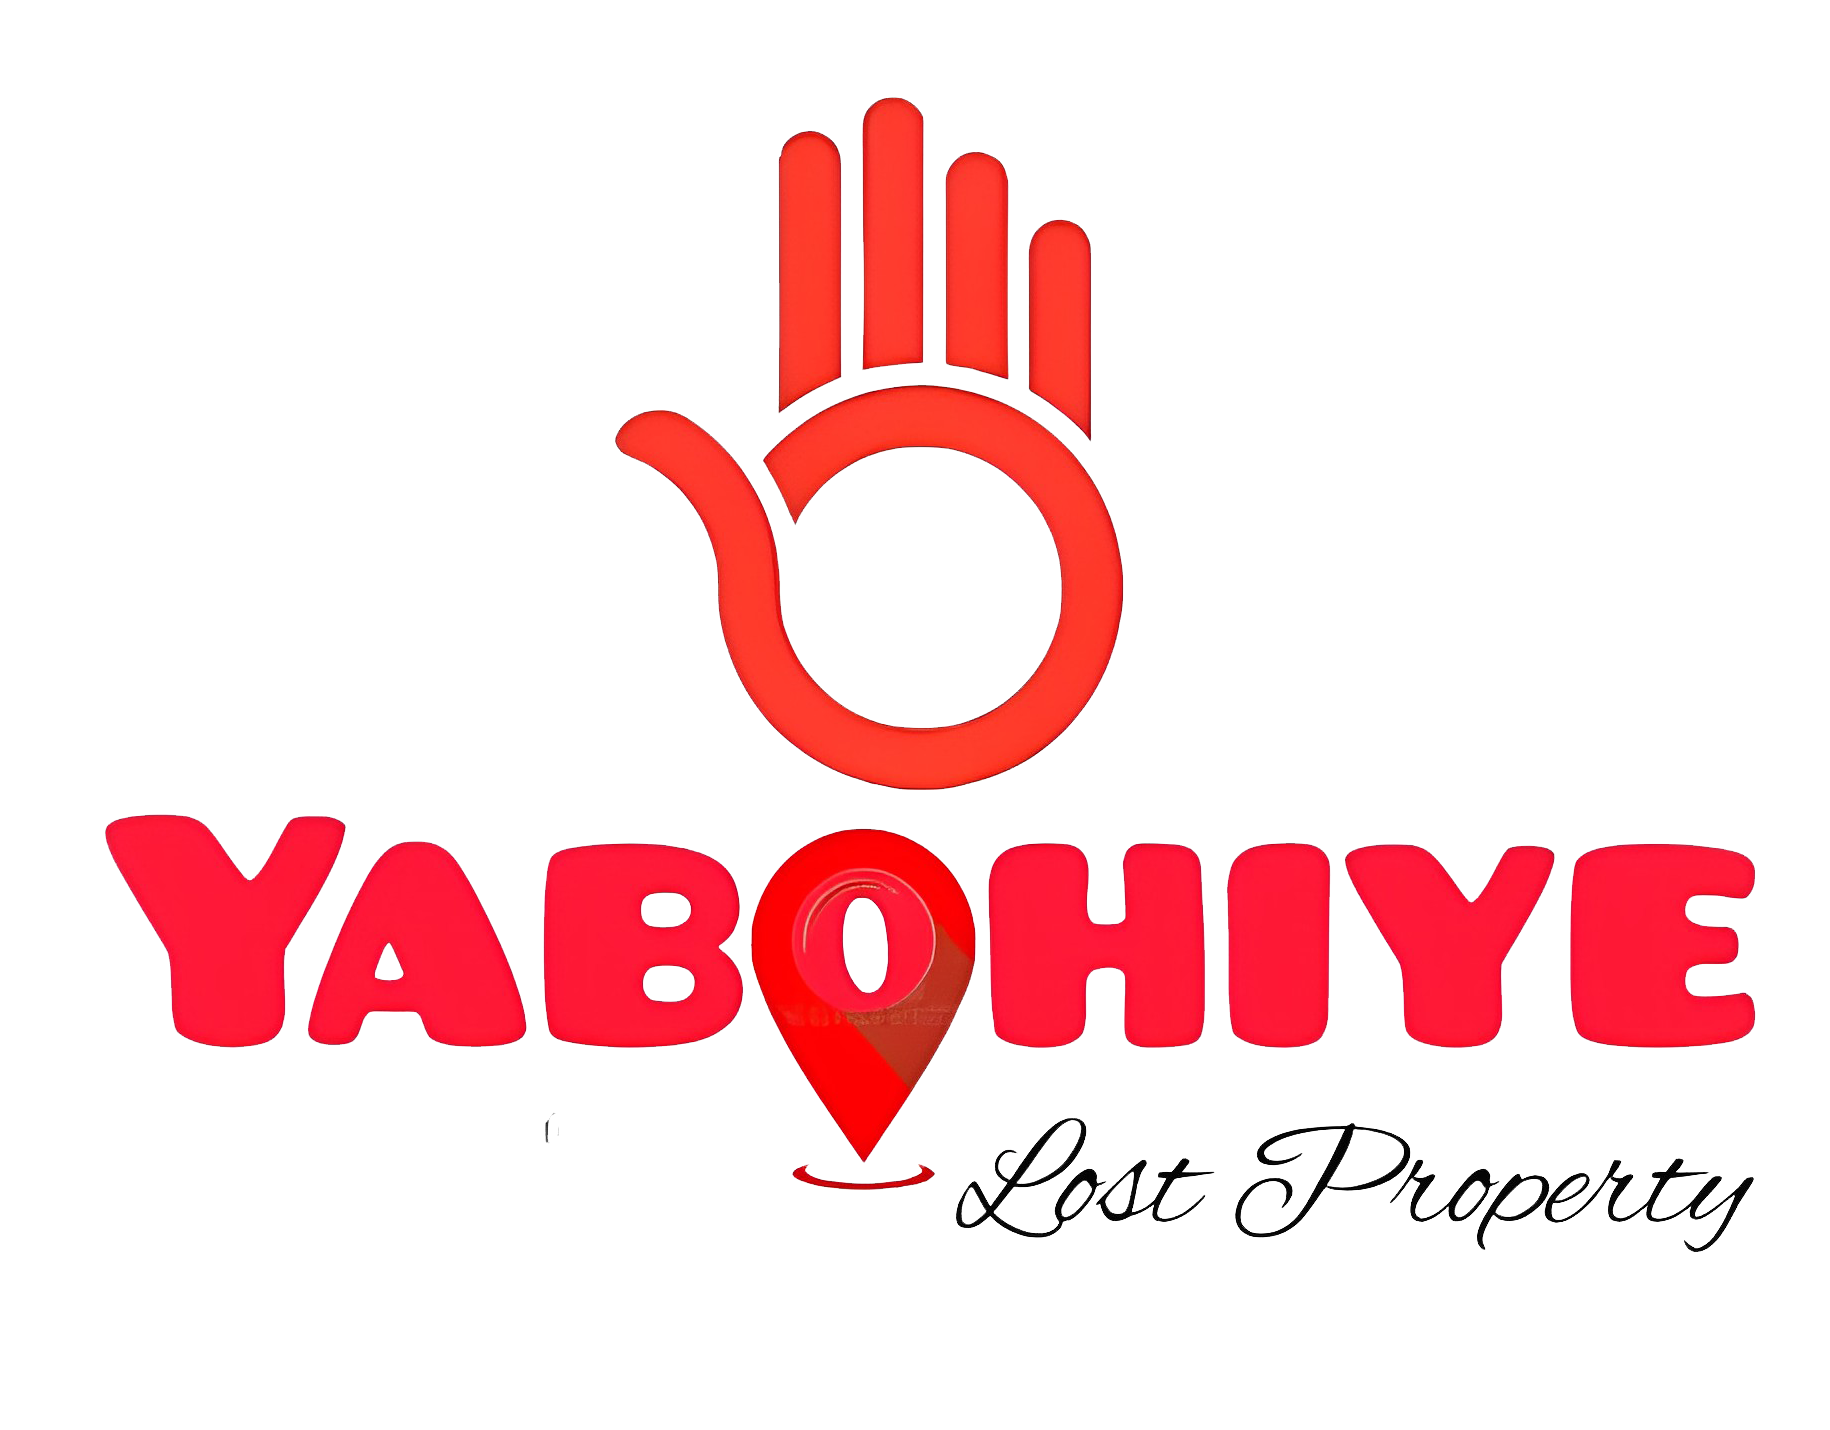 Yaboohiye